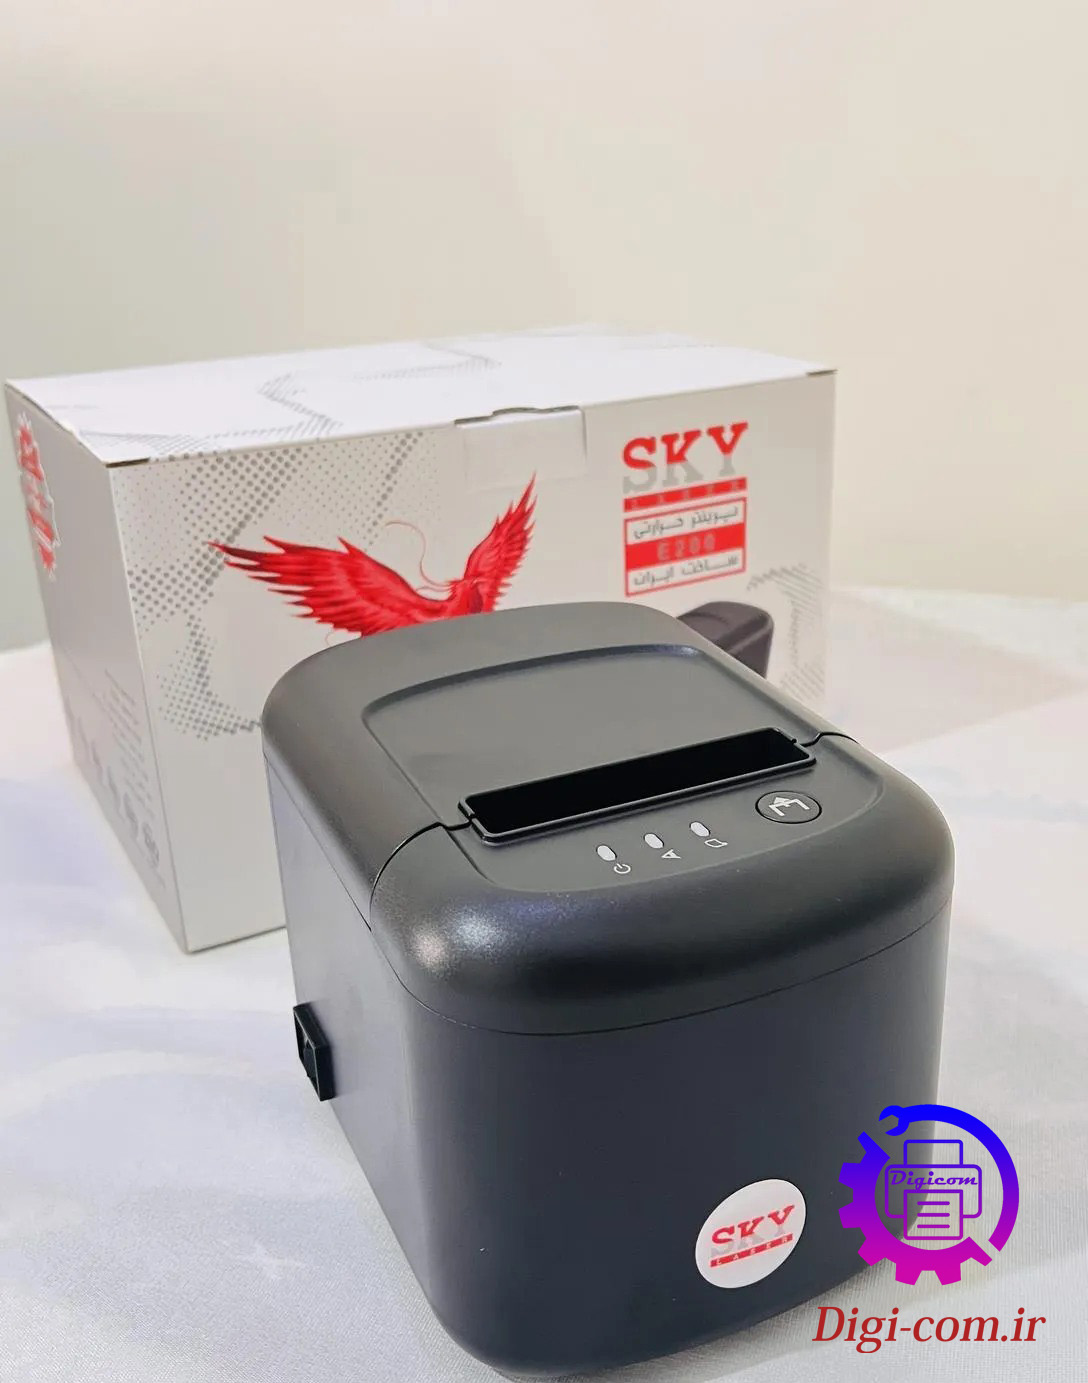 پرینتر حرارتی اسکای  SKY-E200 thermal printer